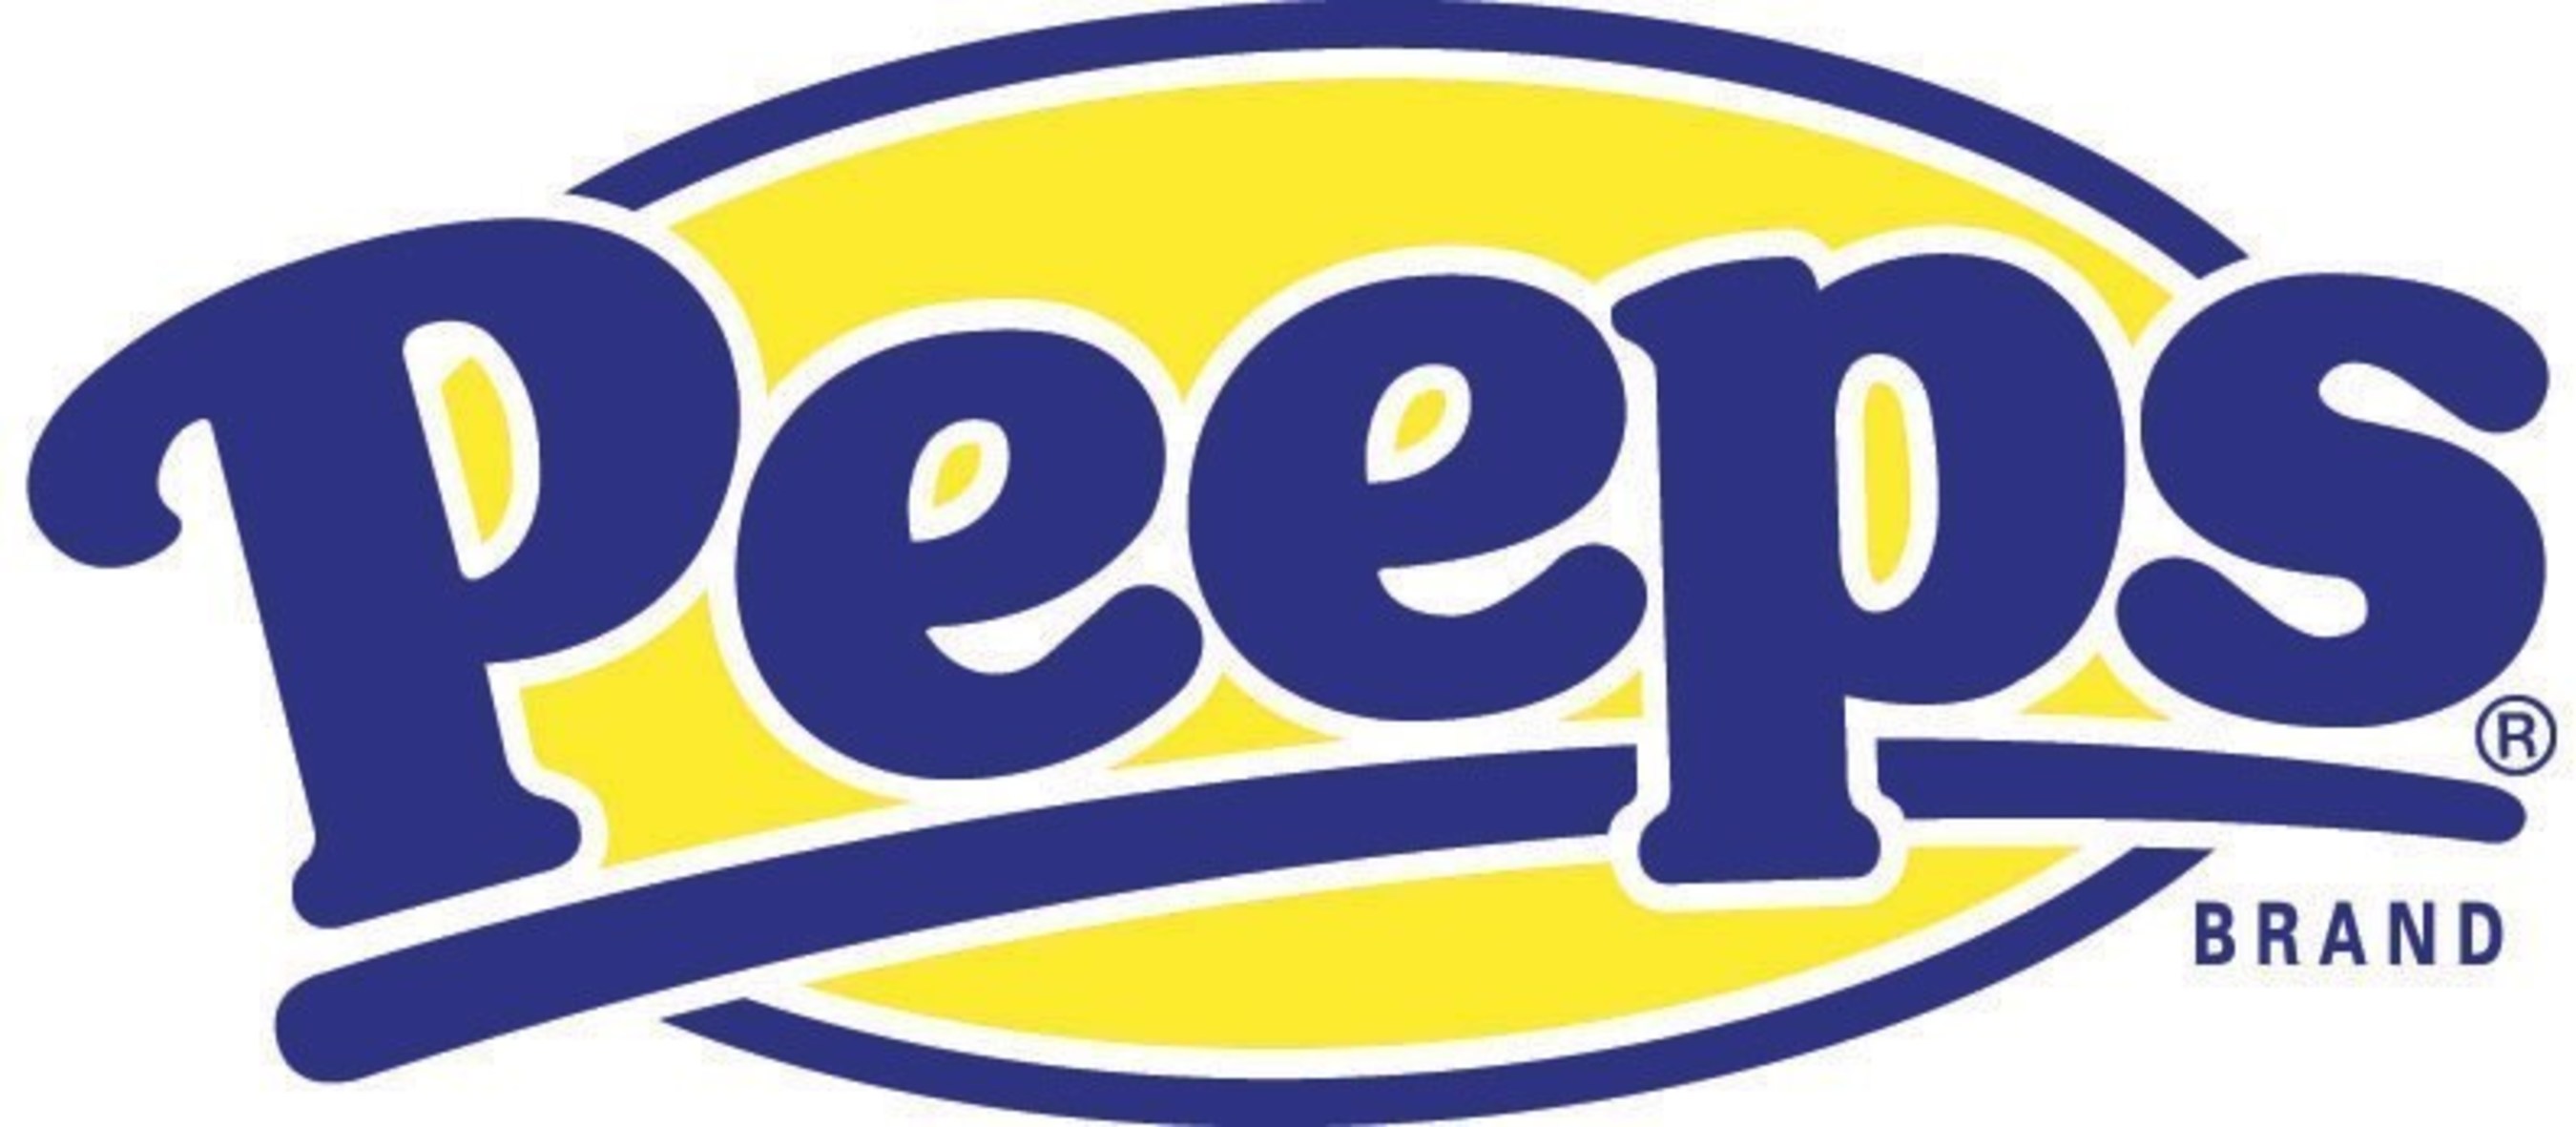 The iconic PEEPS brand